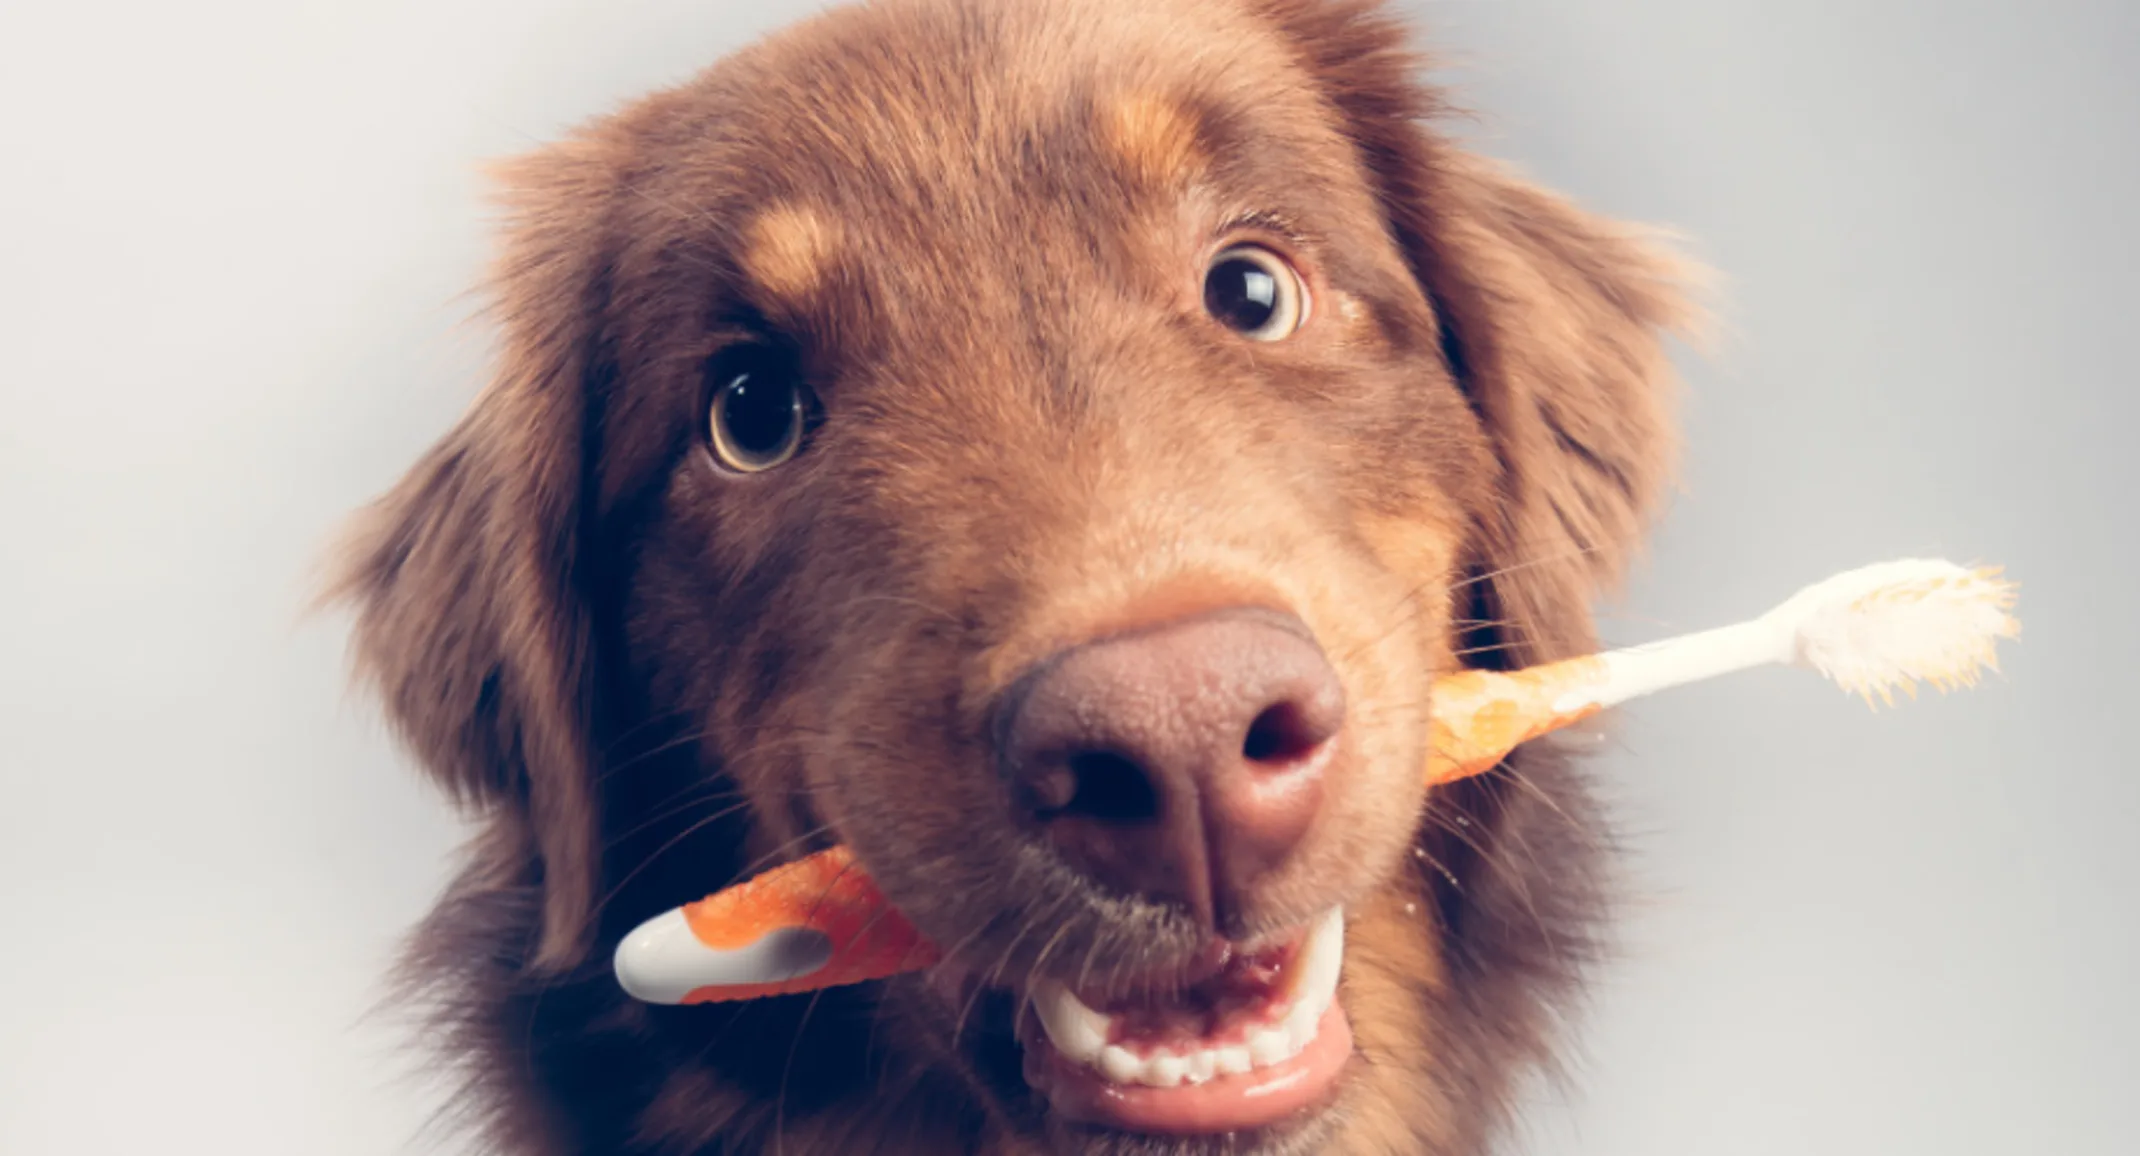 Brown Dog Biting an Orange Toothbrush